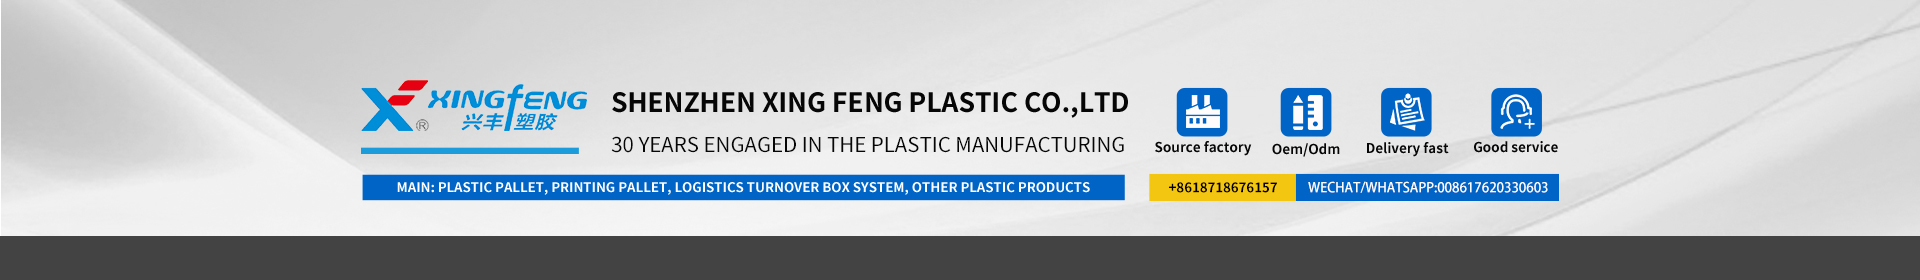 xingfeng Plastikfirma ass professionnell a Plastikprodukter fir 30 Joer